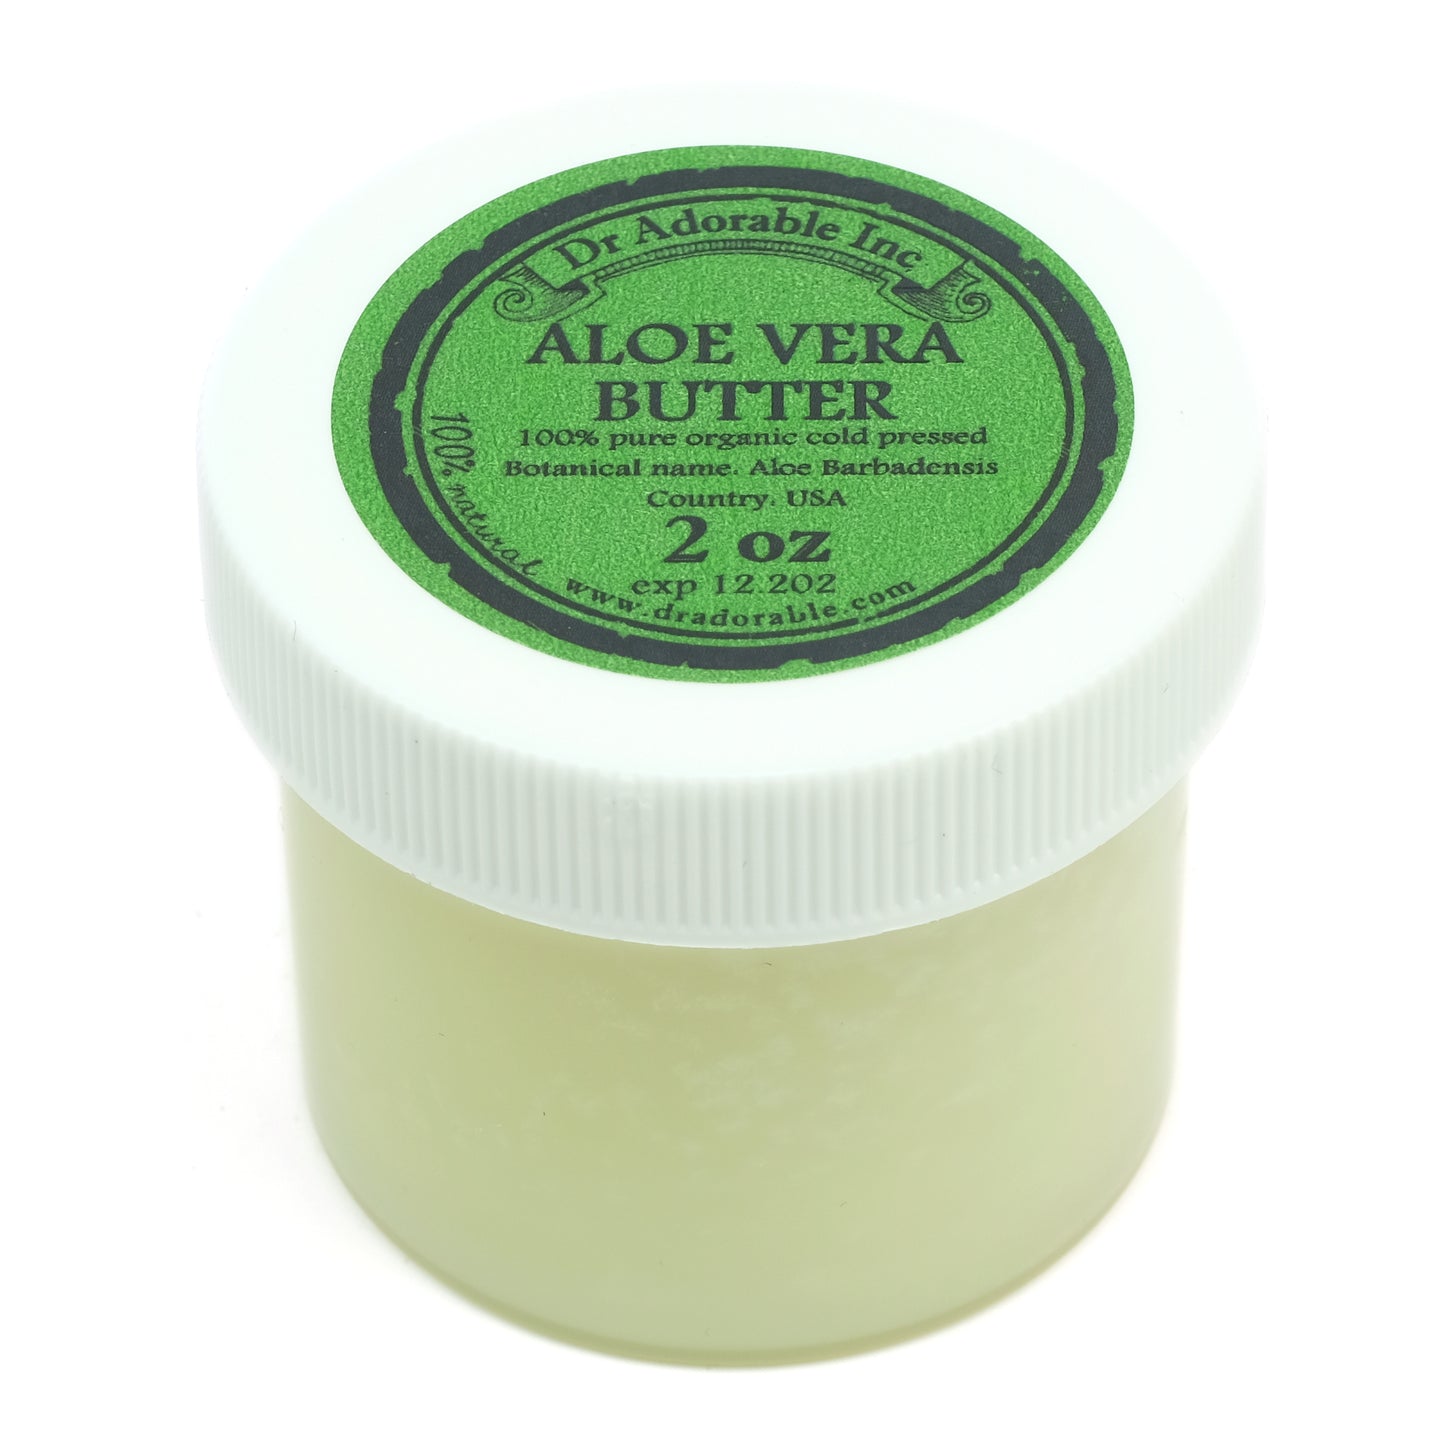 Aloe Vera Butter - Pure Natural Premium Organic Cold Pressed